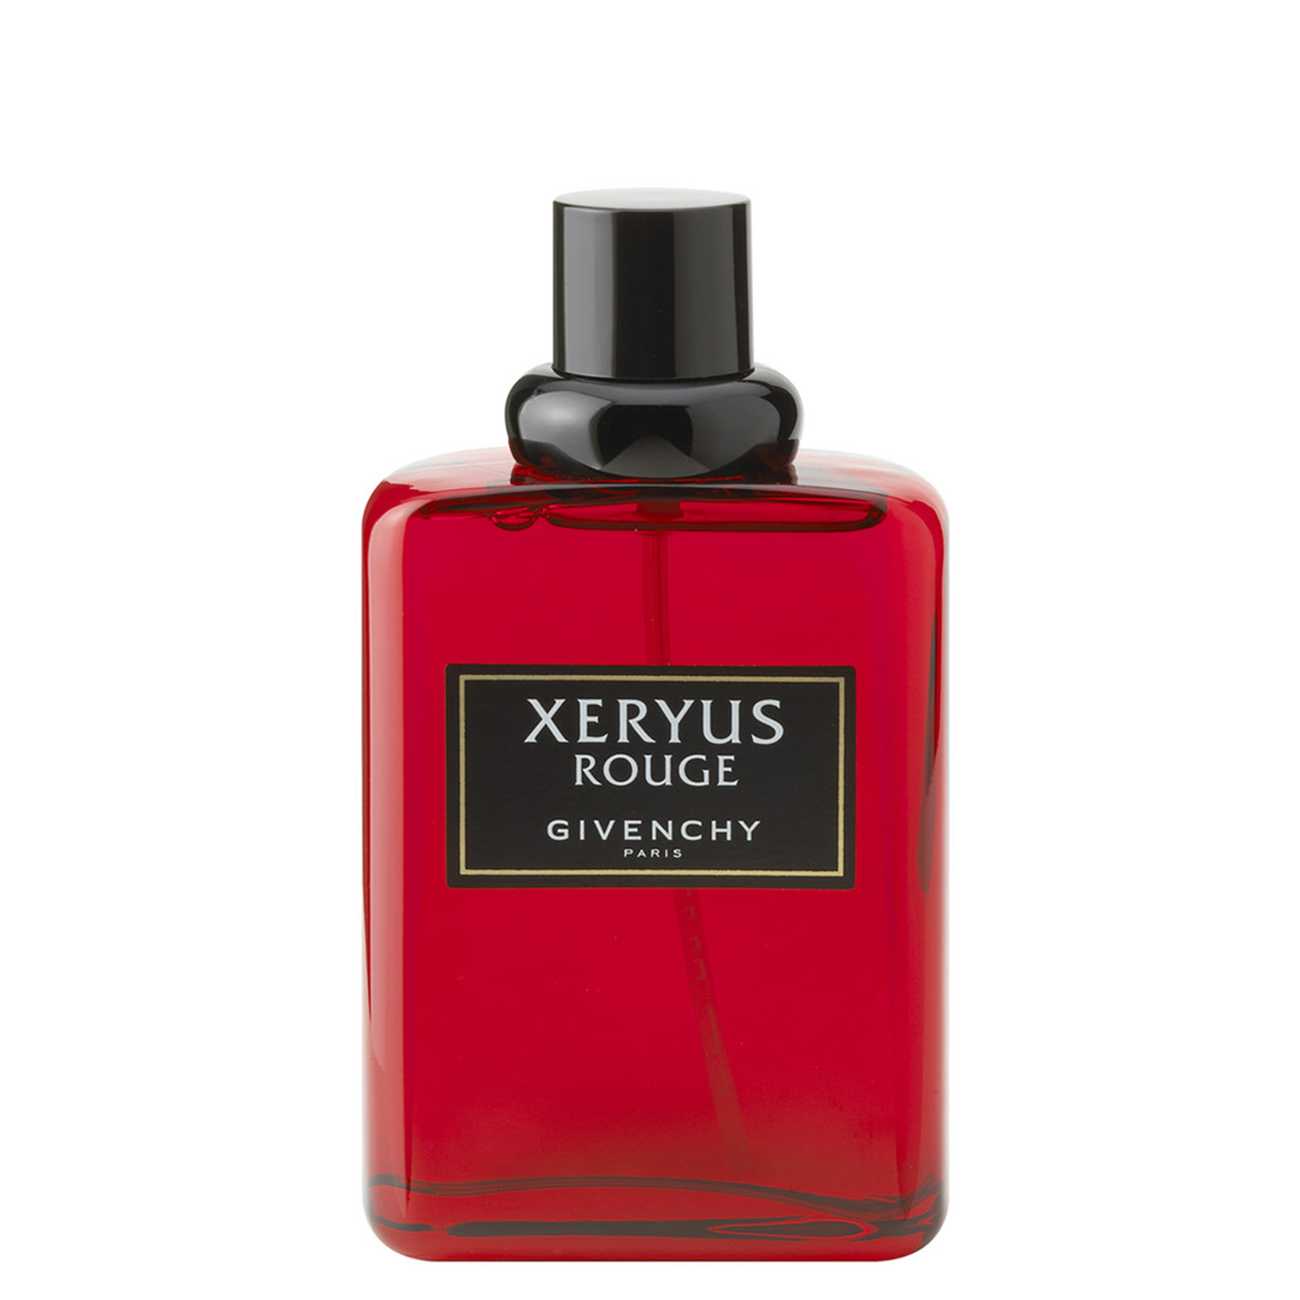 XERYUS ROUGE 100ml Givenchy bestvalue.eu